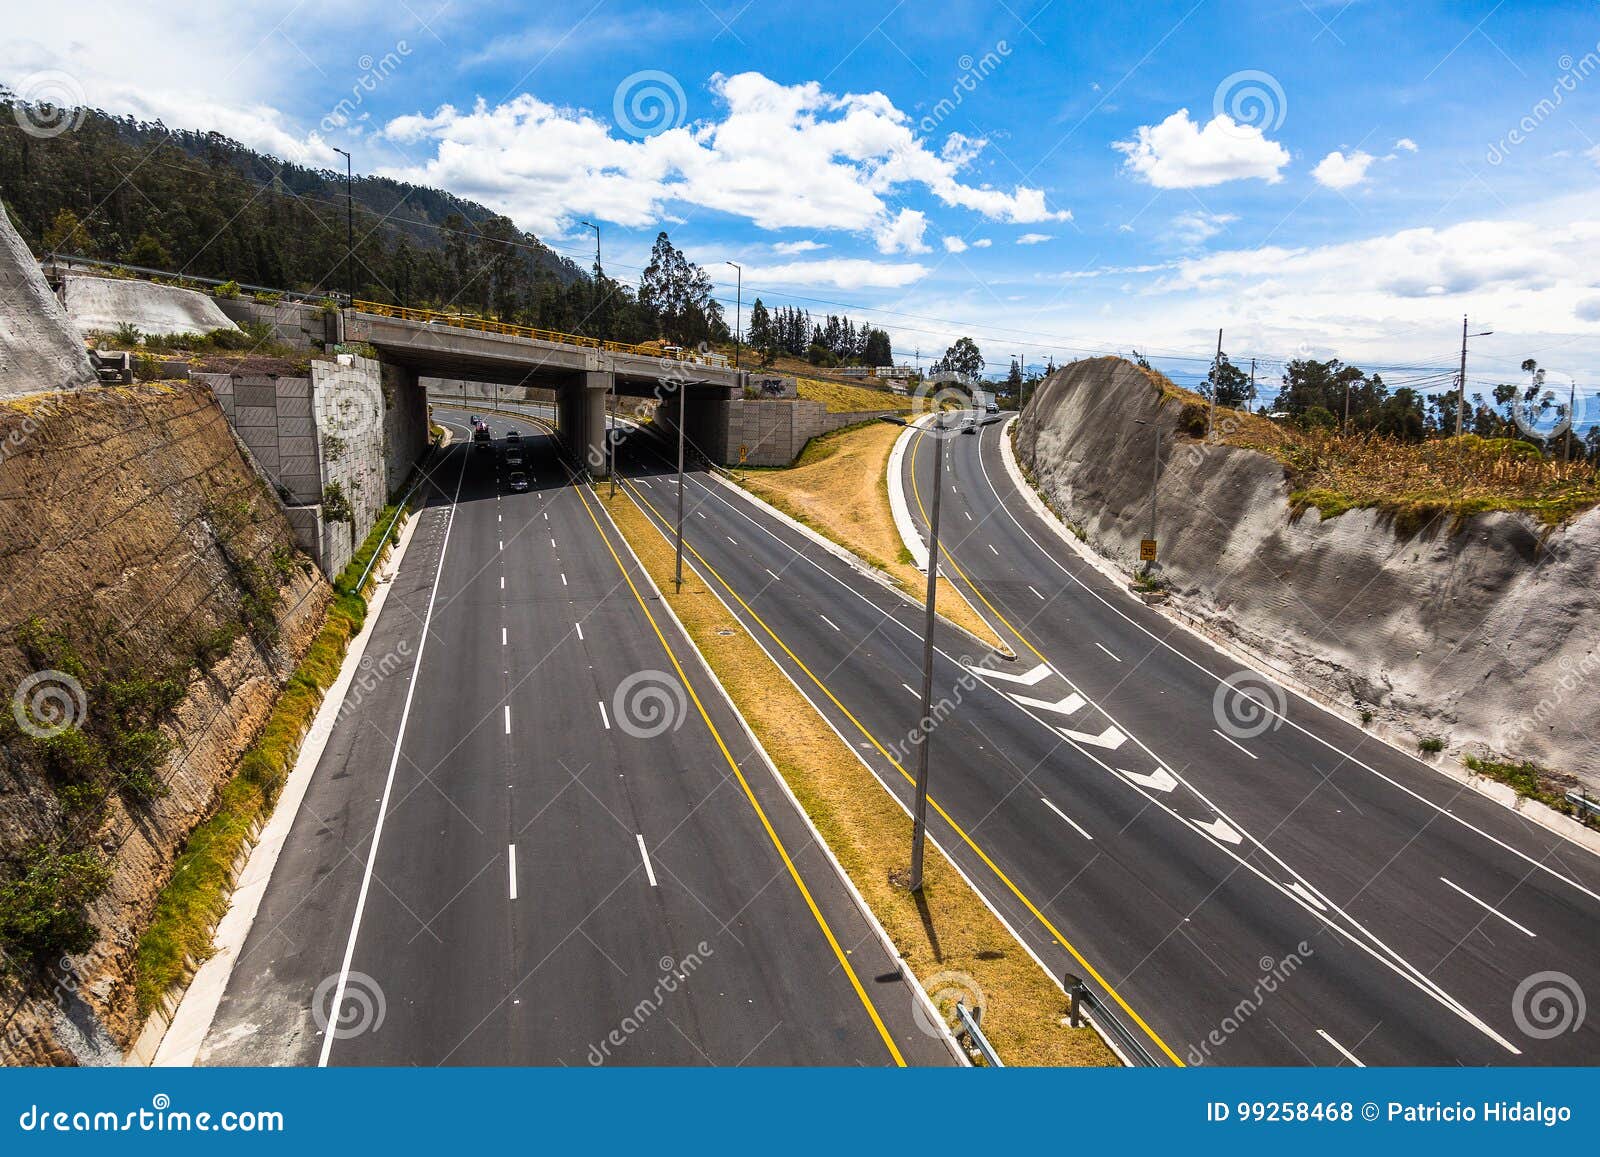 segments of highway